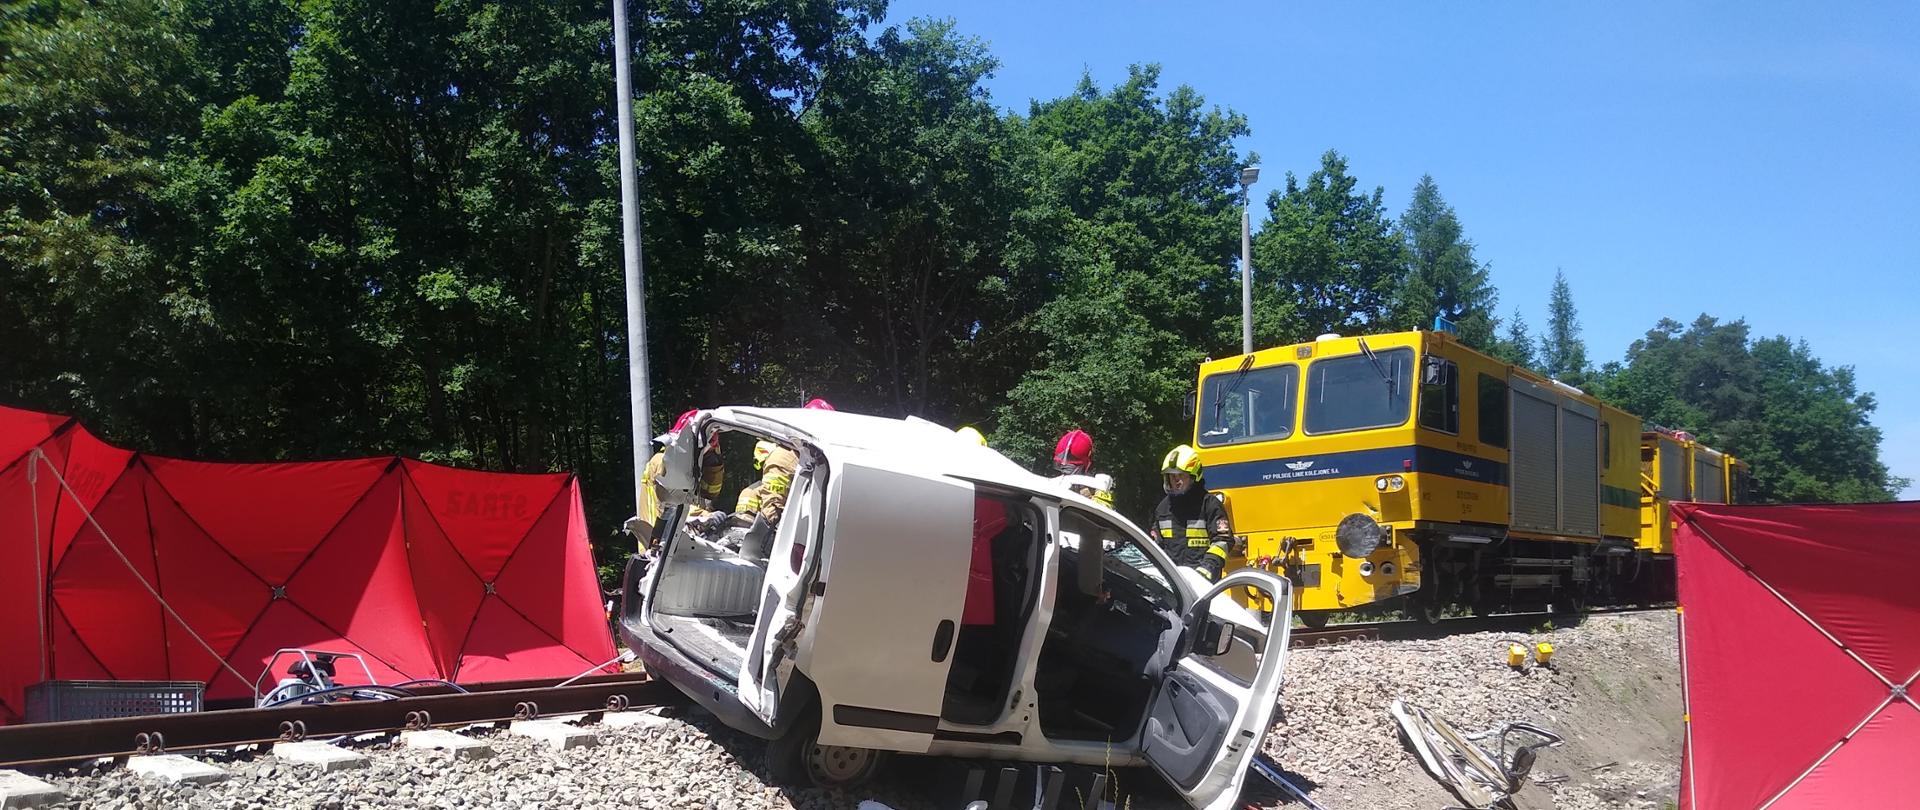 wypadek na torach kolejowych, uszkodzony biały samochód znajduje się przed żółta lokomotywą 